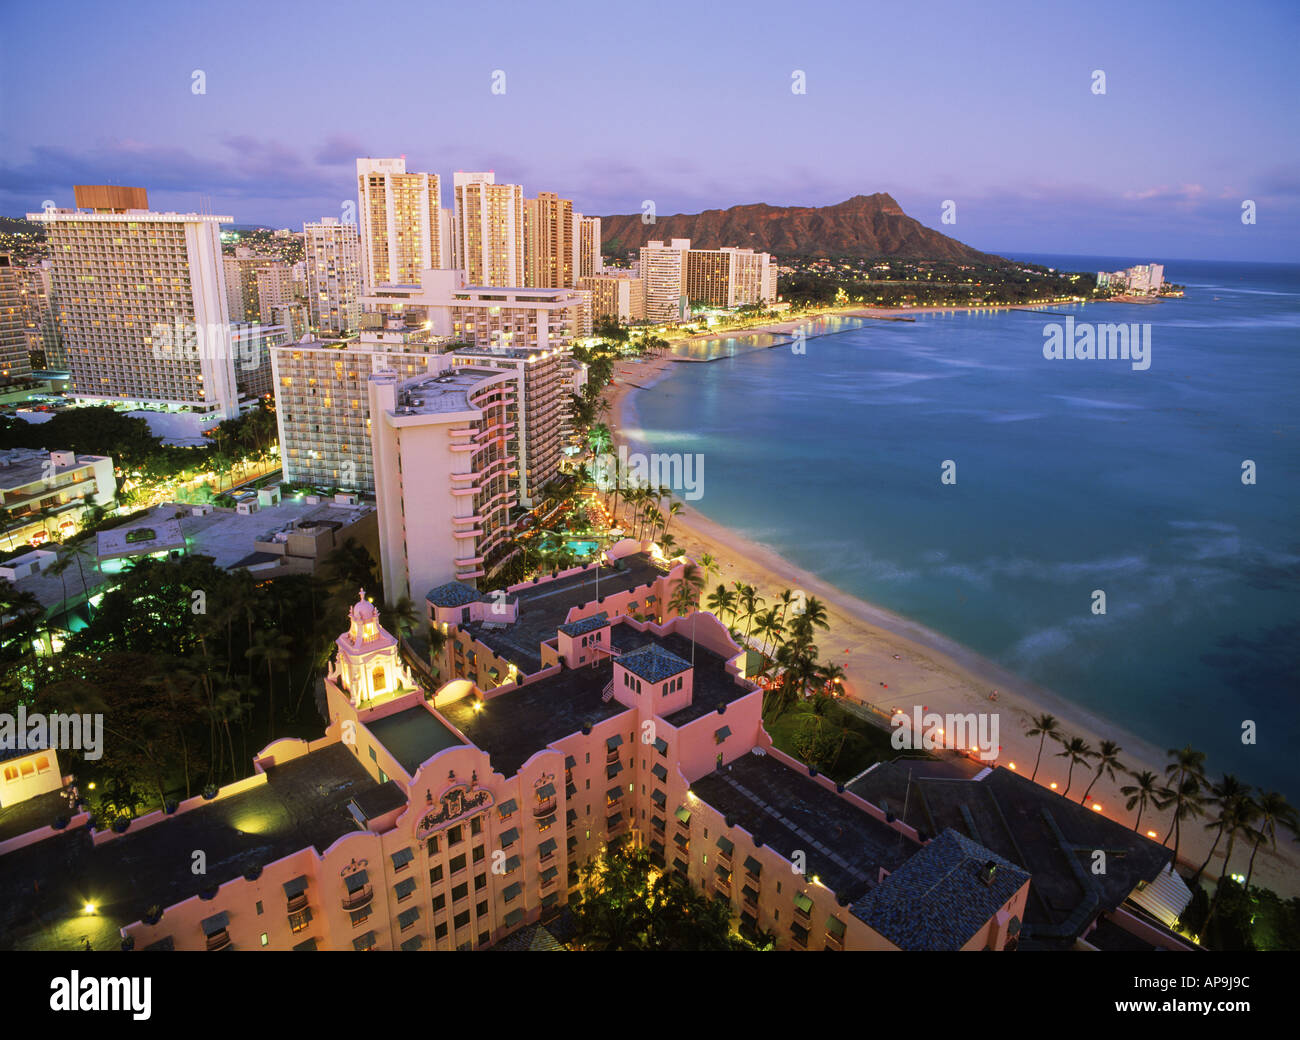 La plage de Waikiki et Diamond Head en face de la plage avec des hôtels Sheraton et rose ci-dessous au crépuscule sur l'Ile Oahu Hawaii Banque D'Images